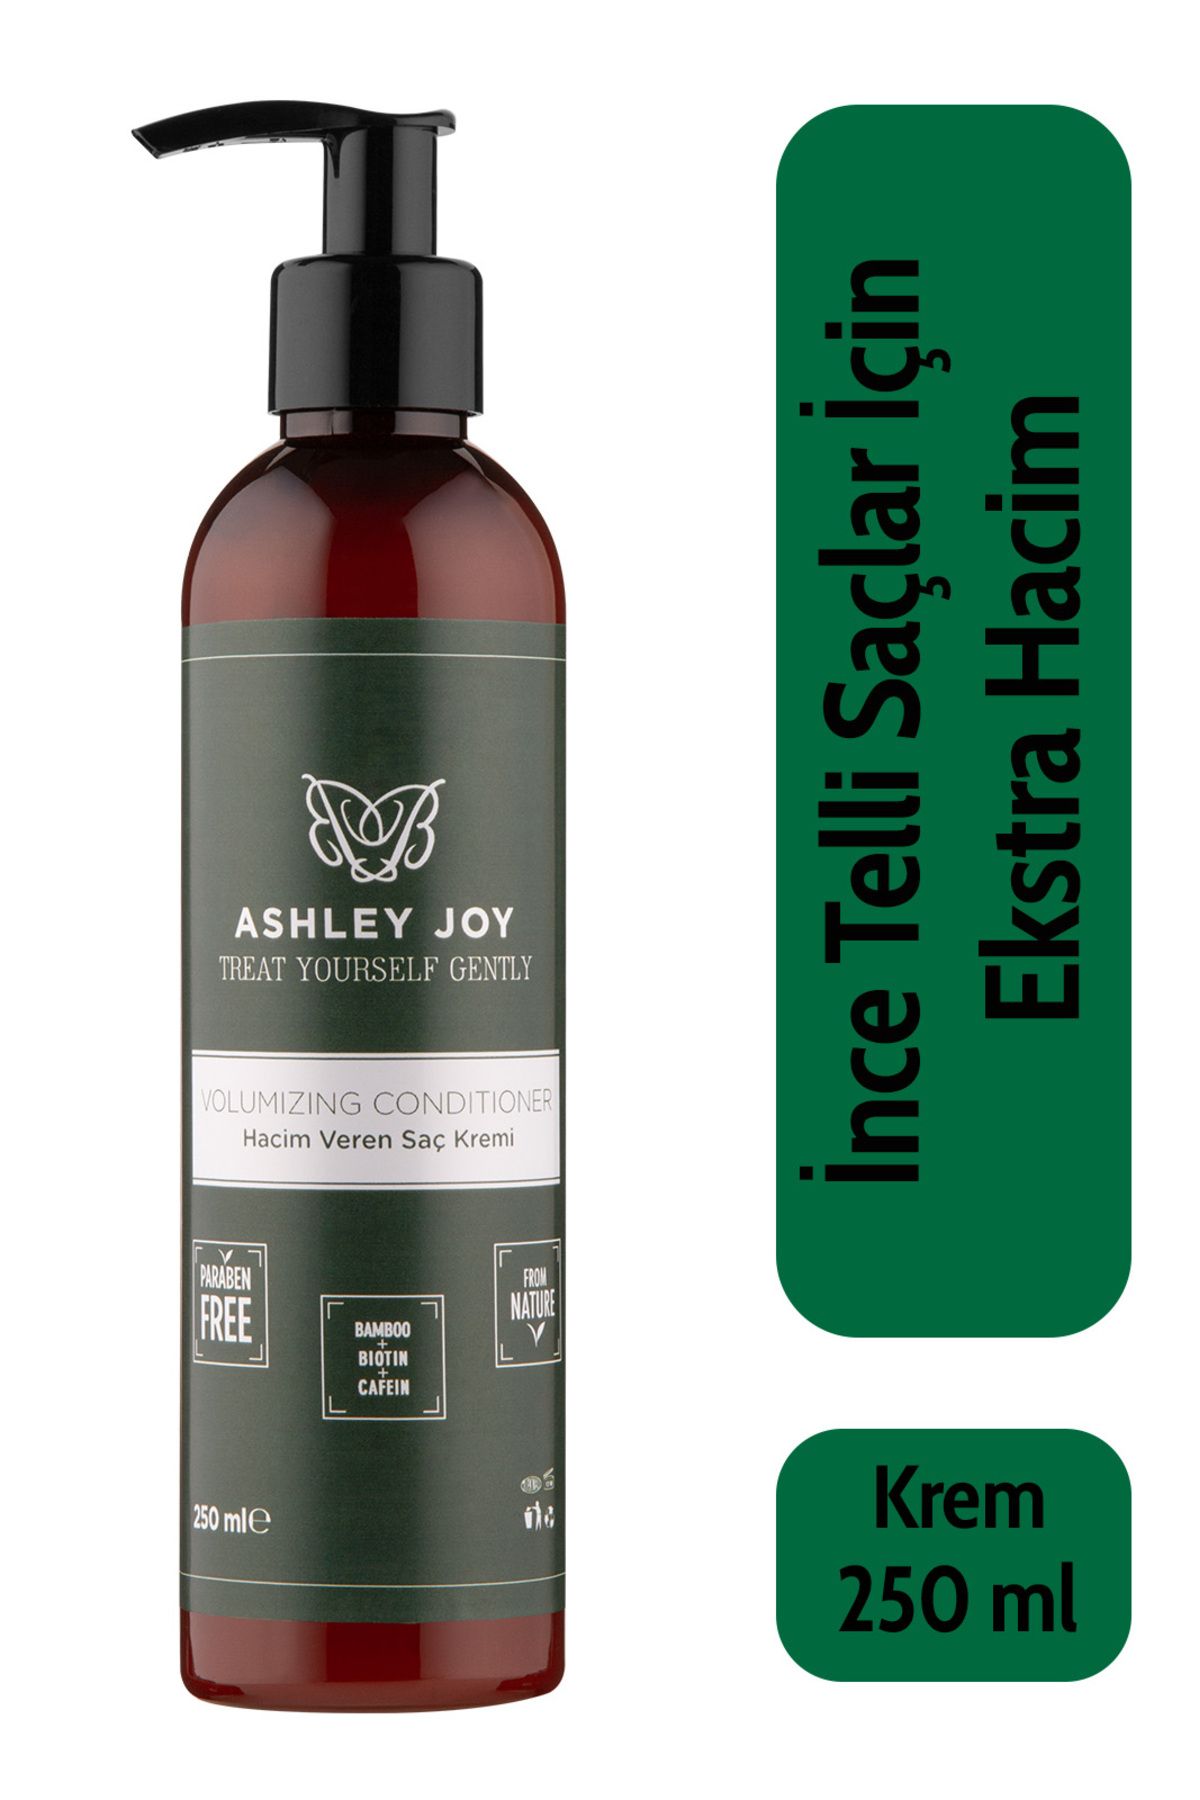 Ashley Joy Ince Telli Saçlar Için Hacim Veren Dolgunlaştırıcı Biotin,kafein Içeren Saç Kremi 250 ml